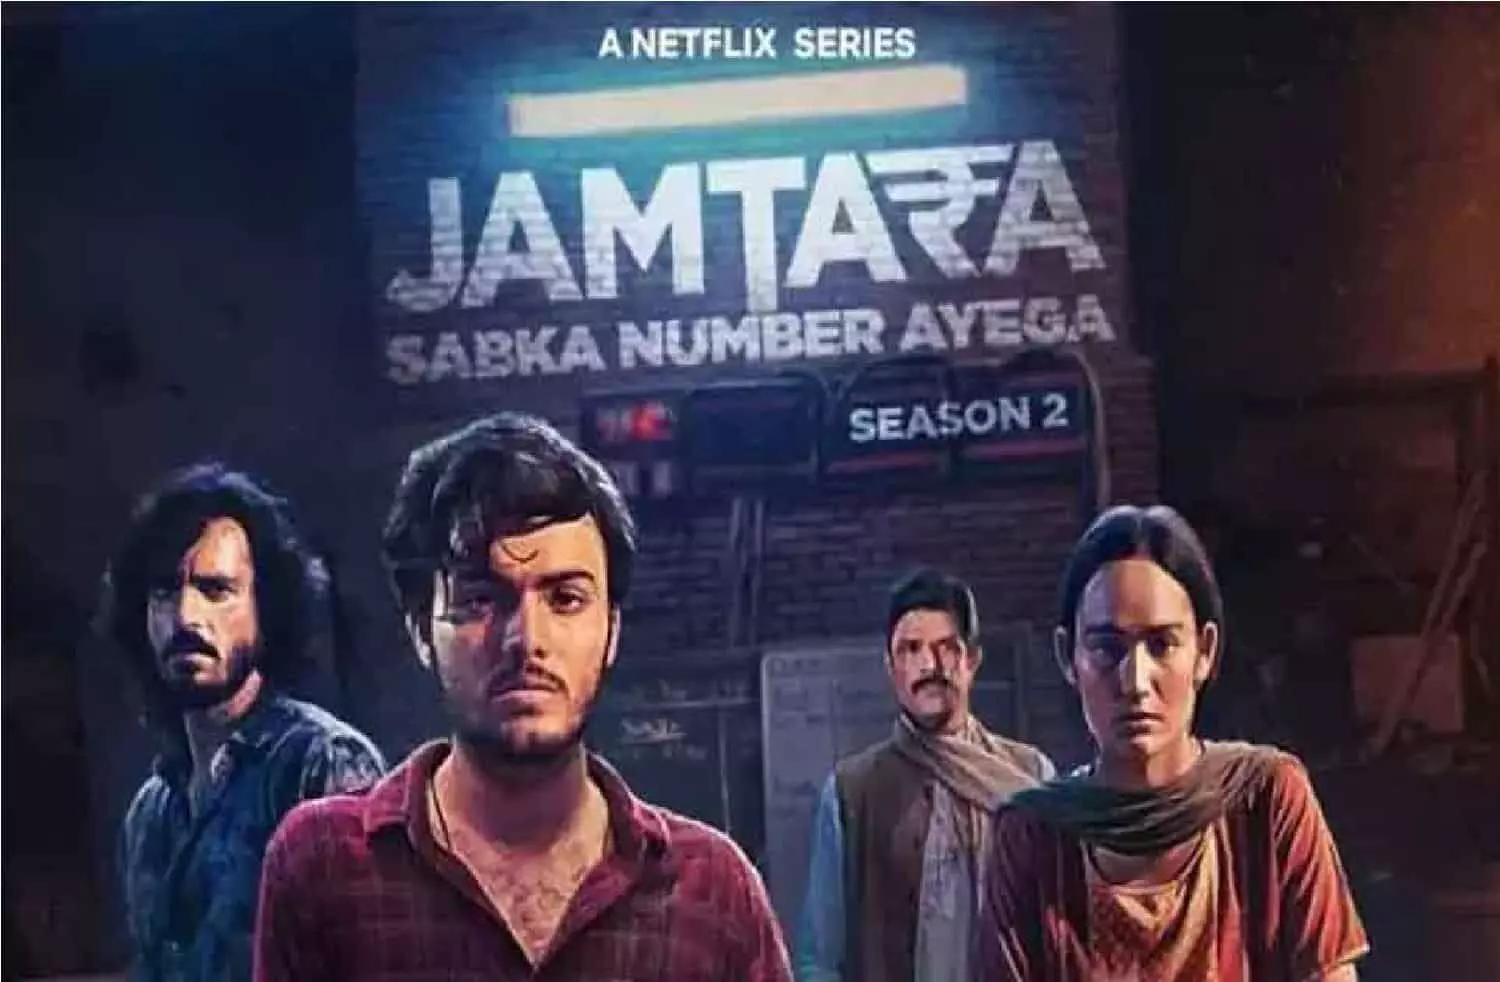 Jamtara Season 2 Trailer Release